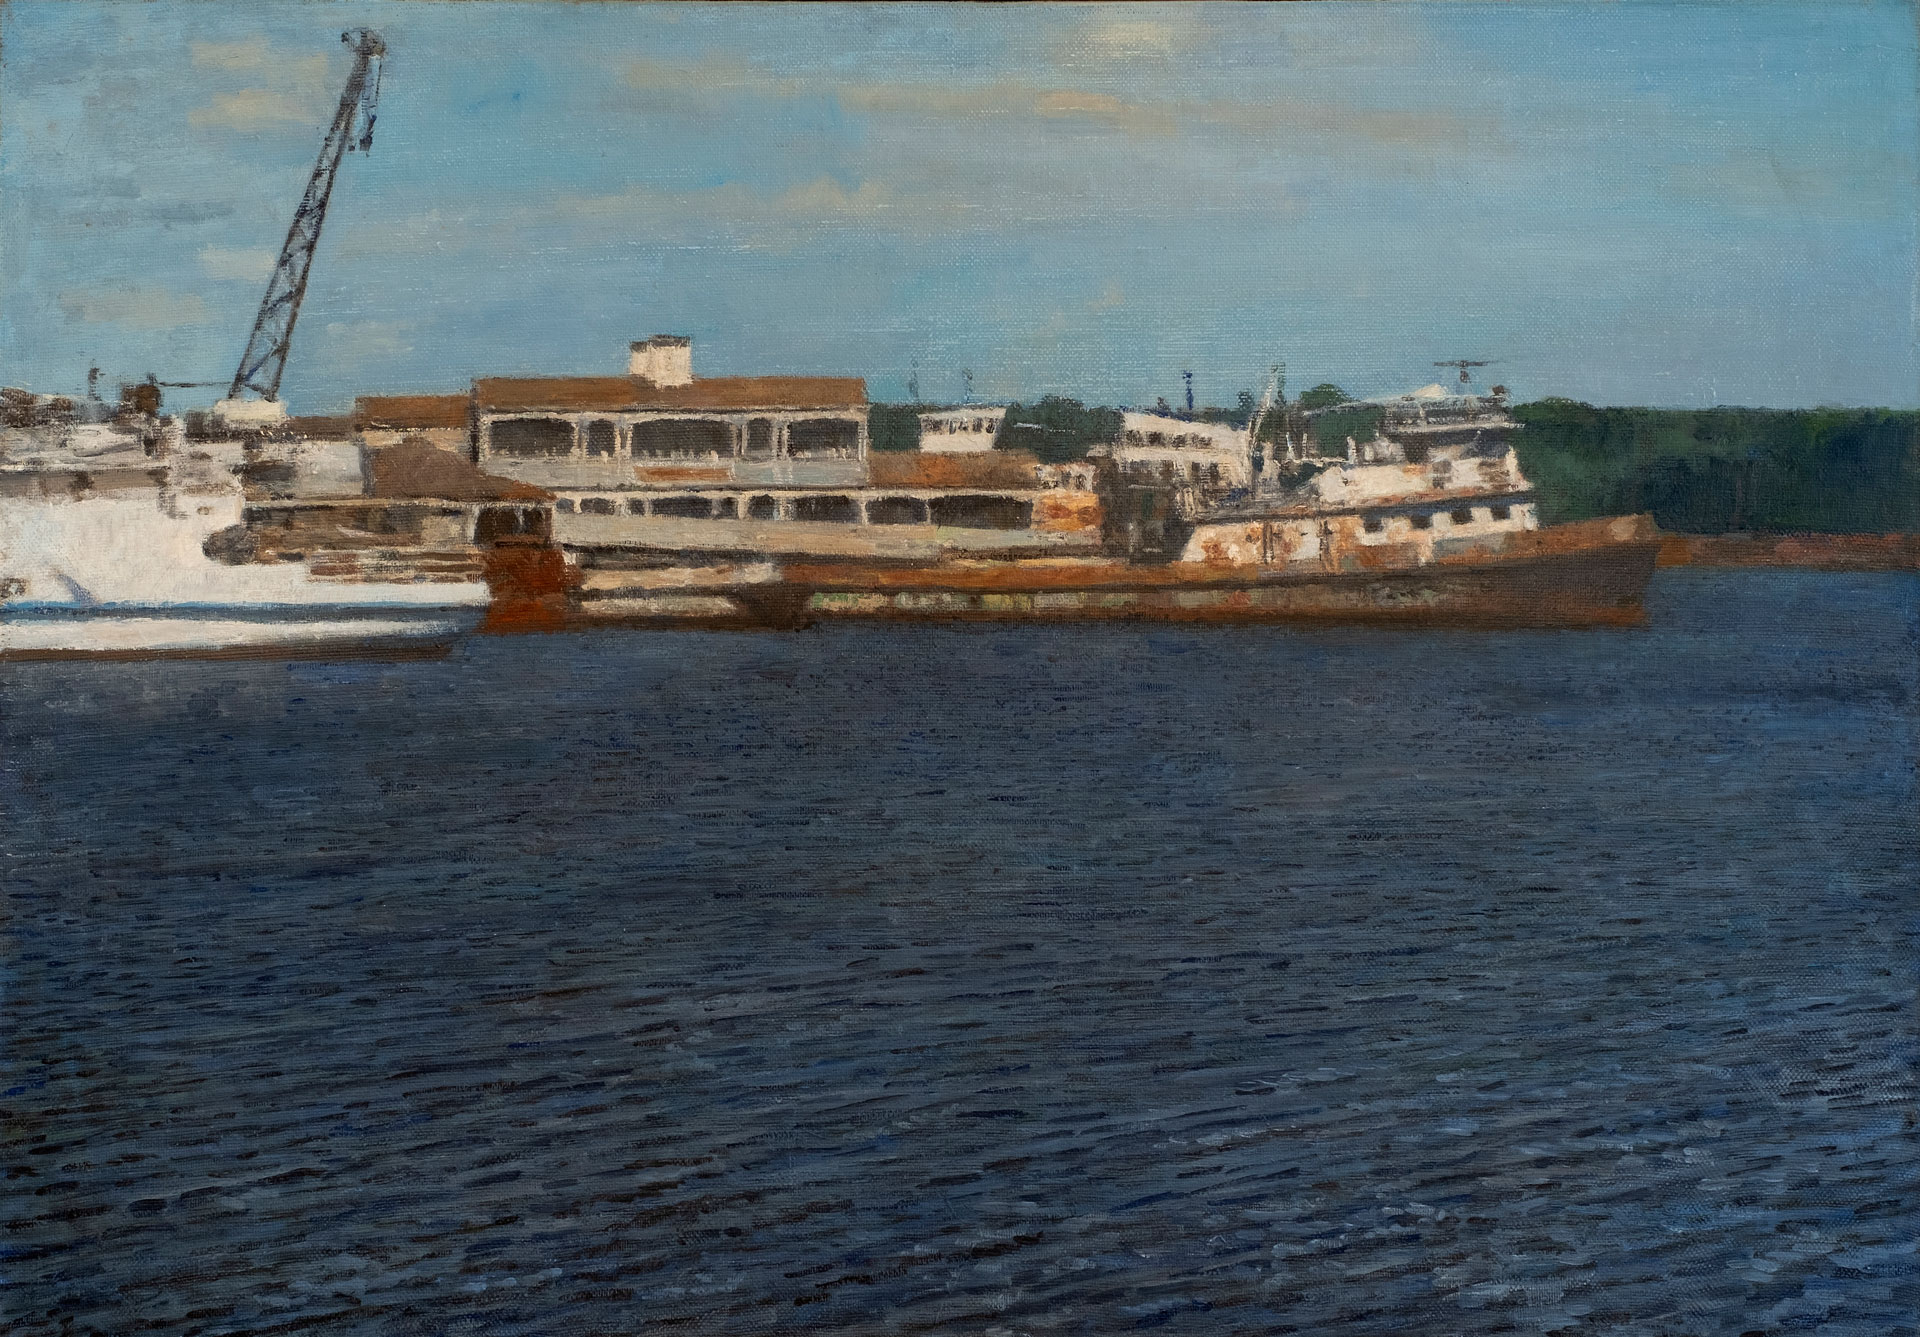 Dock - 1, Maksim Kaetkin, Buy the painting Oil